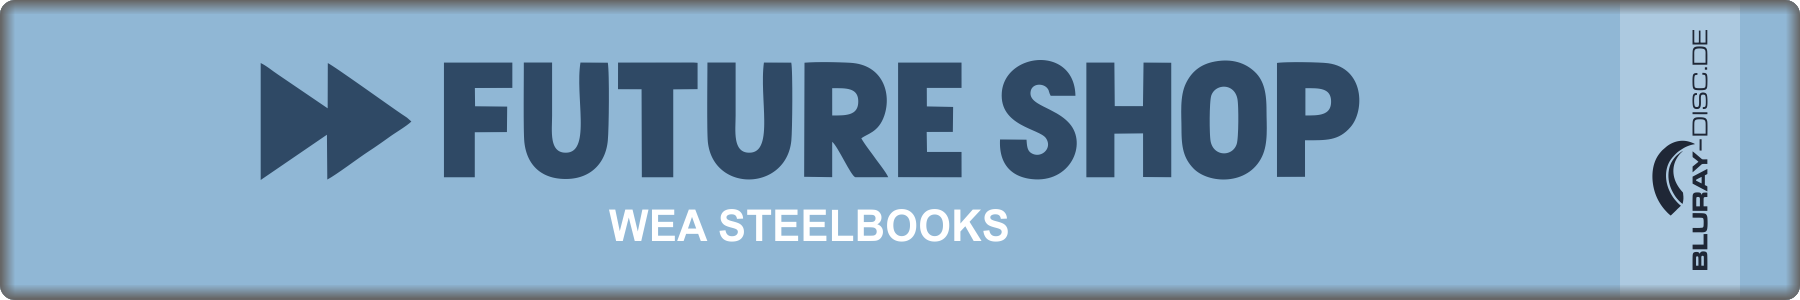 FutureShop_WEA_Steelbooks.png